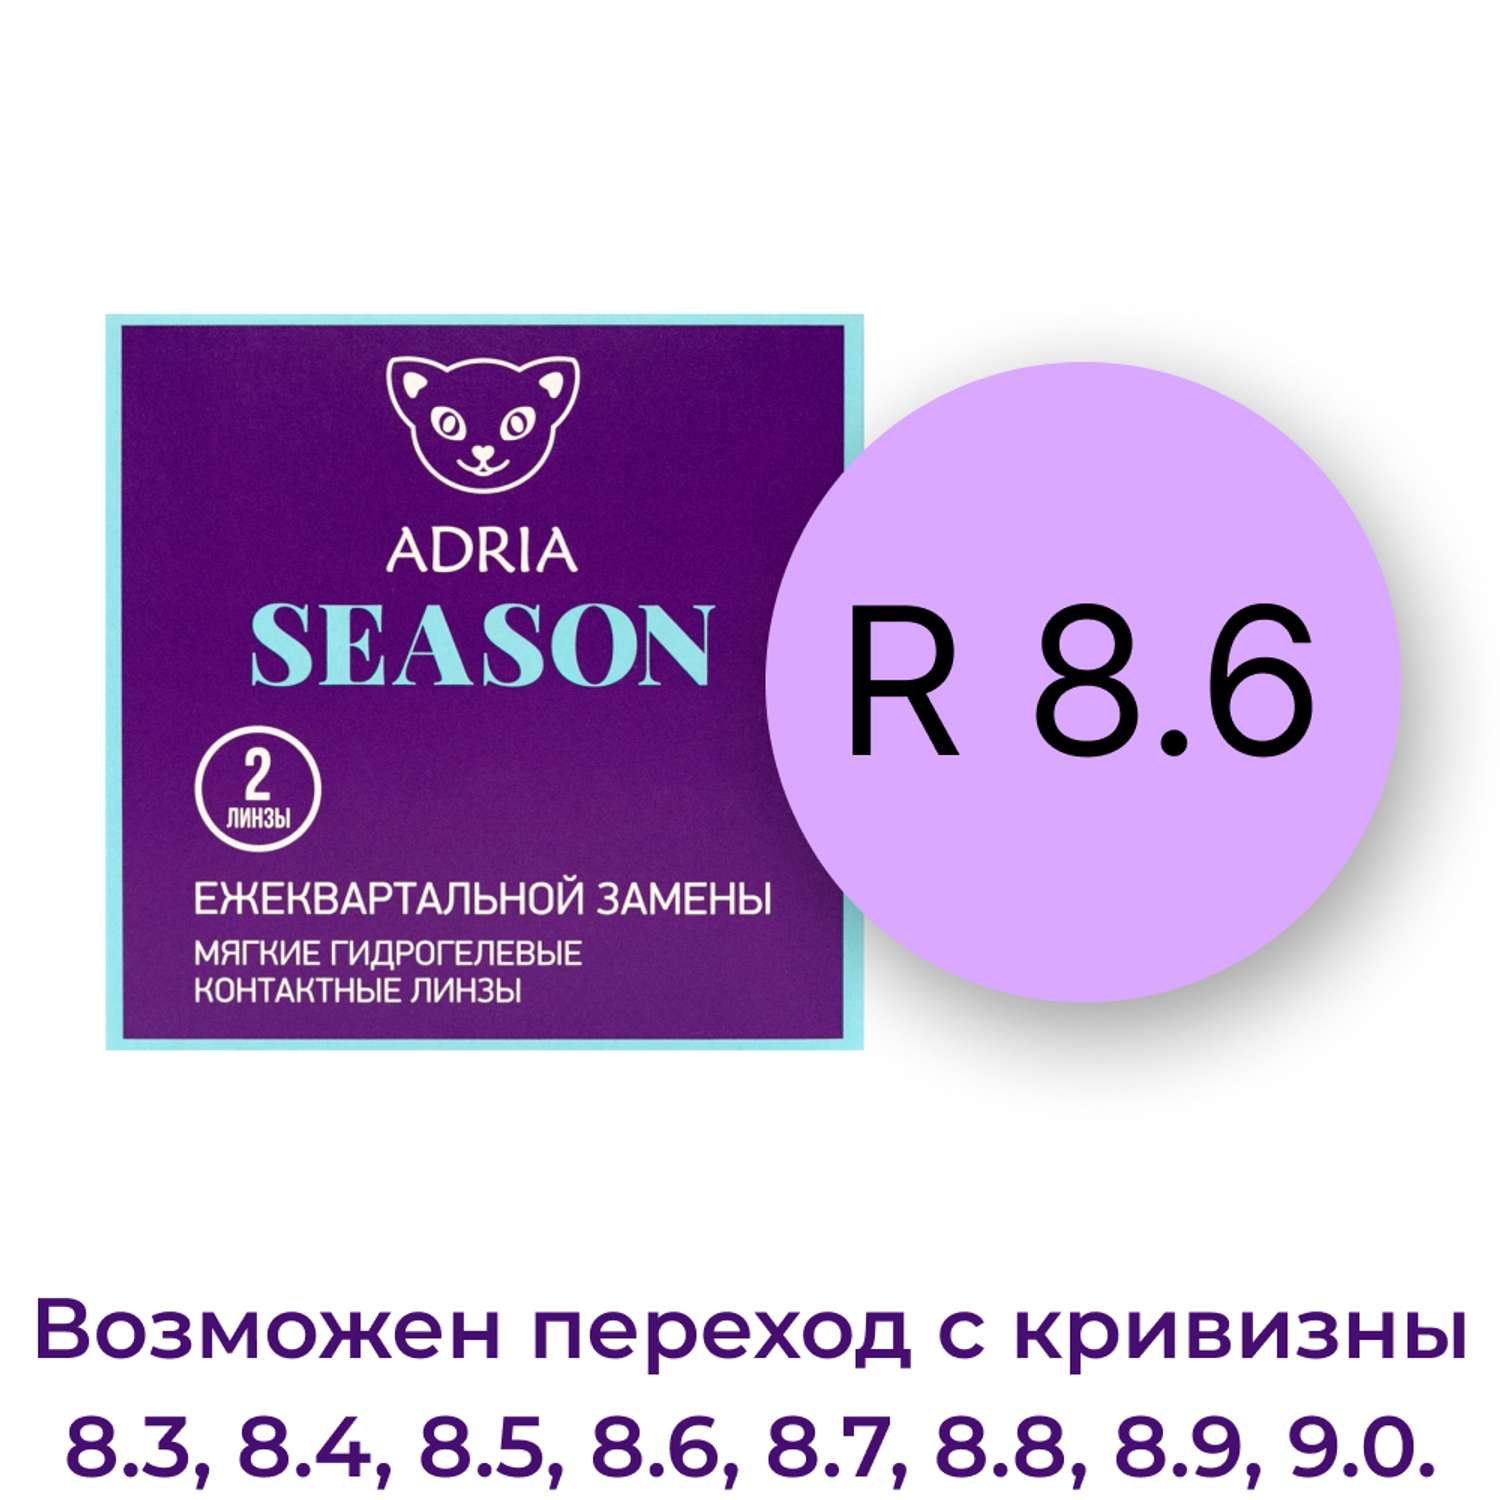 Контактные линзы ADRIA Season 2 линзы R 8.6 -3.25 - фото 3